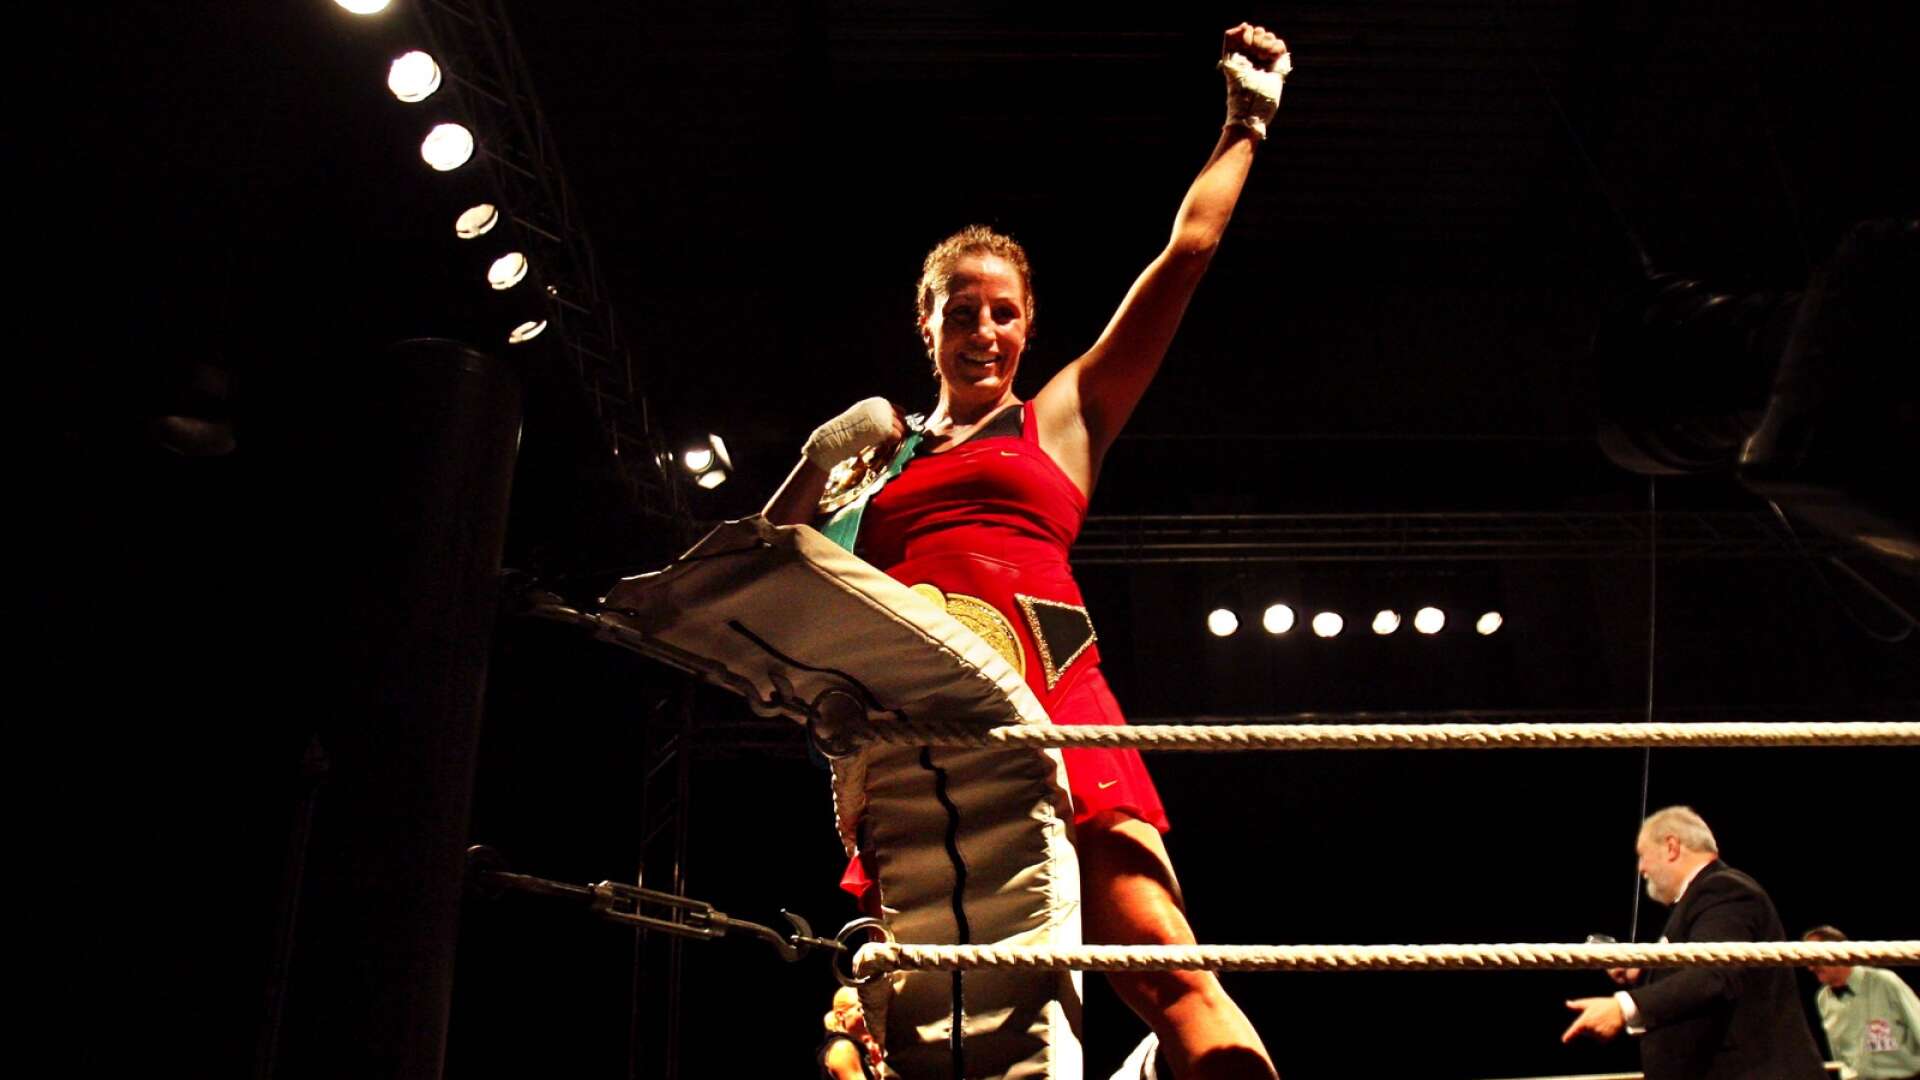 Banbrytaren och pionjären Anna Ingman från Karlstad blev världens bästa kvinnliga proffsboxare. Här förvandlas lycksaliga Anna till Tarzan i ringrepen efter VM-segern 2008.